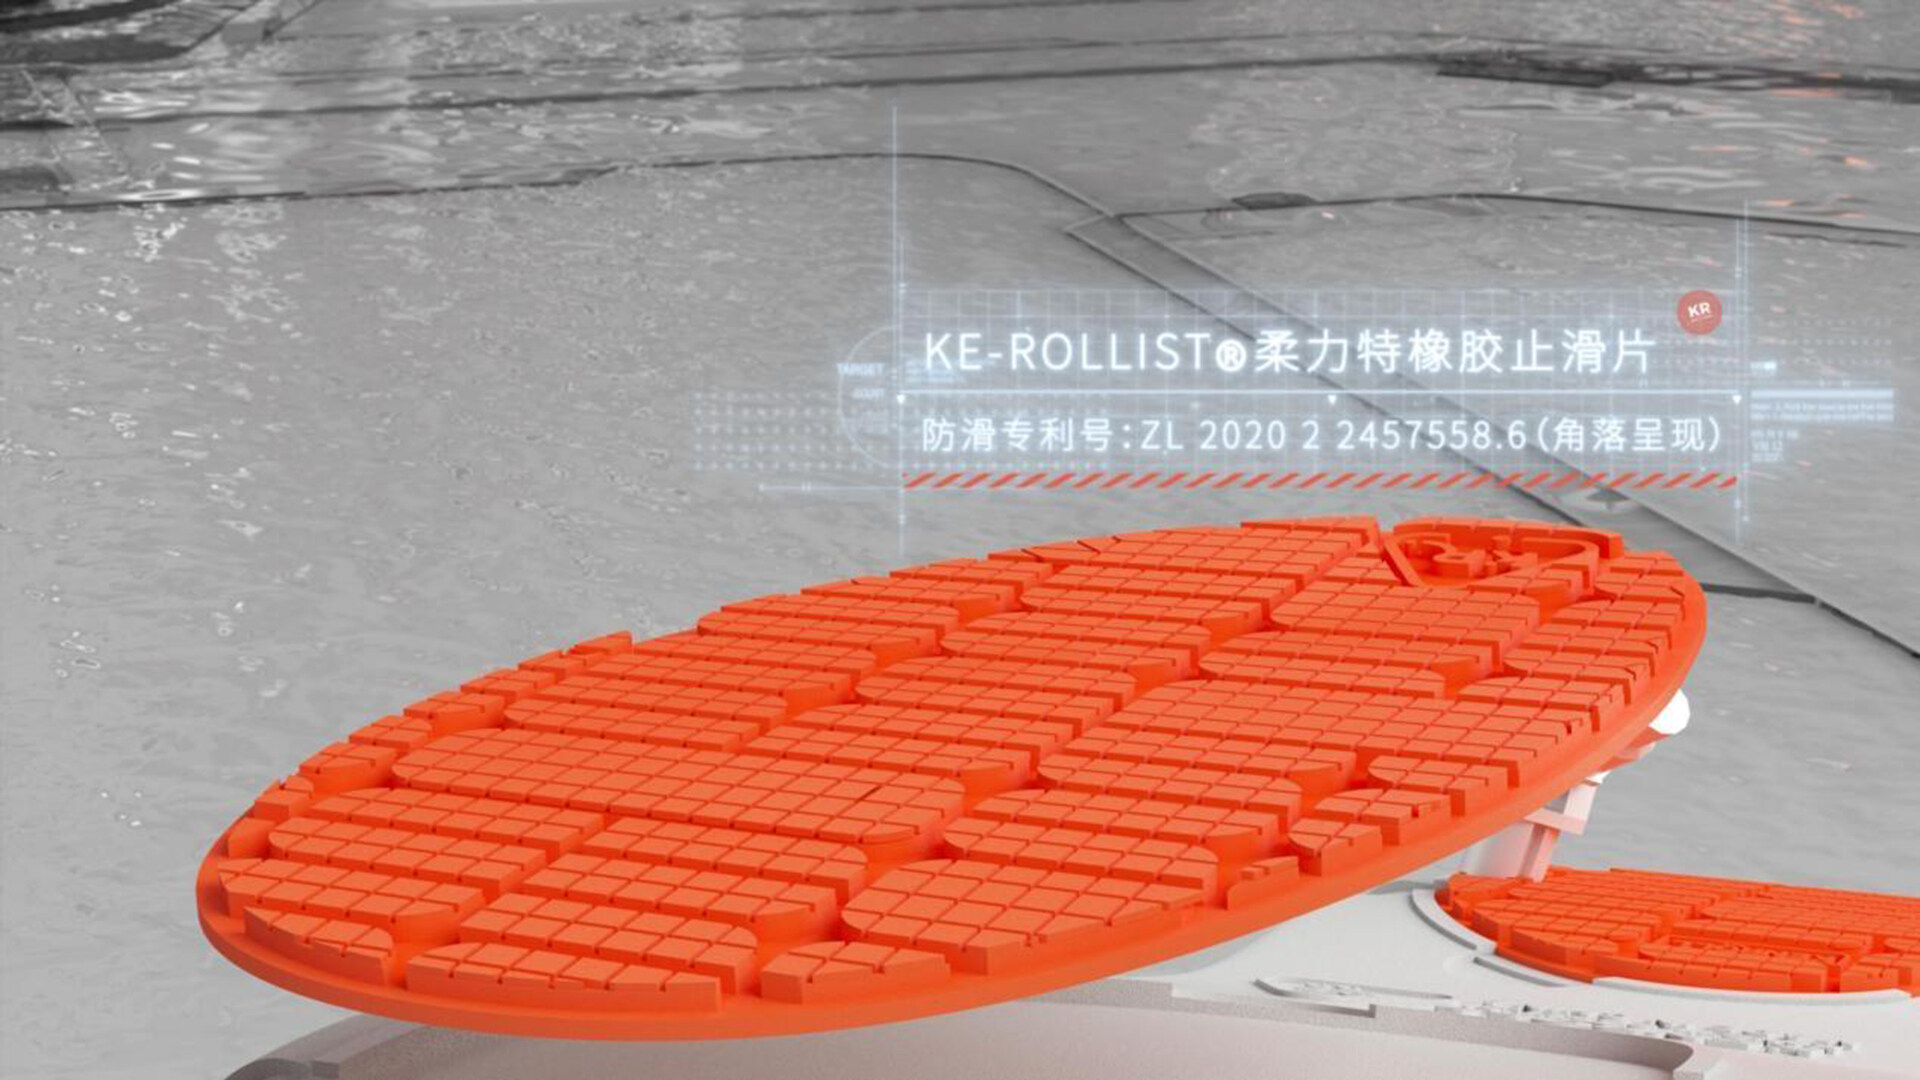 防滑拖鞋设计-生活家居产品设计-科柔品牌设计